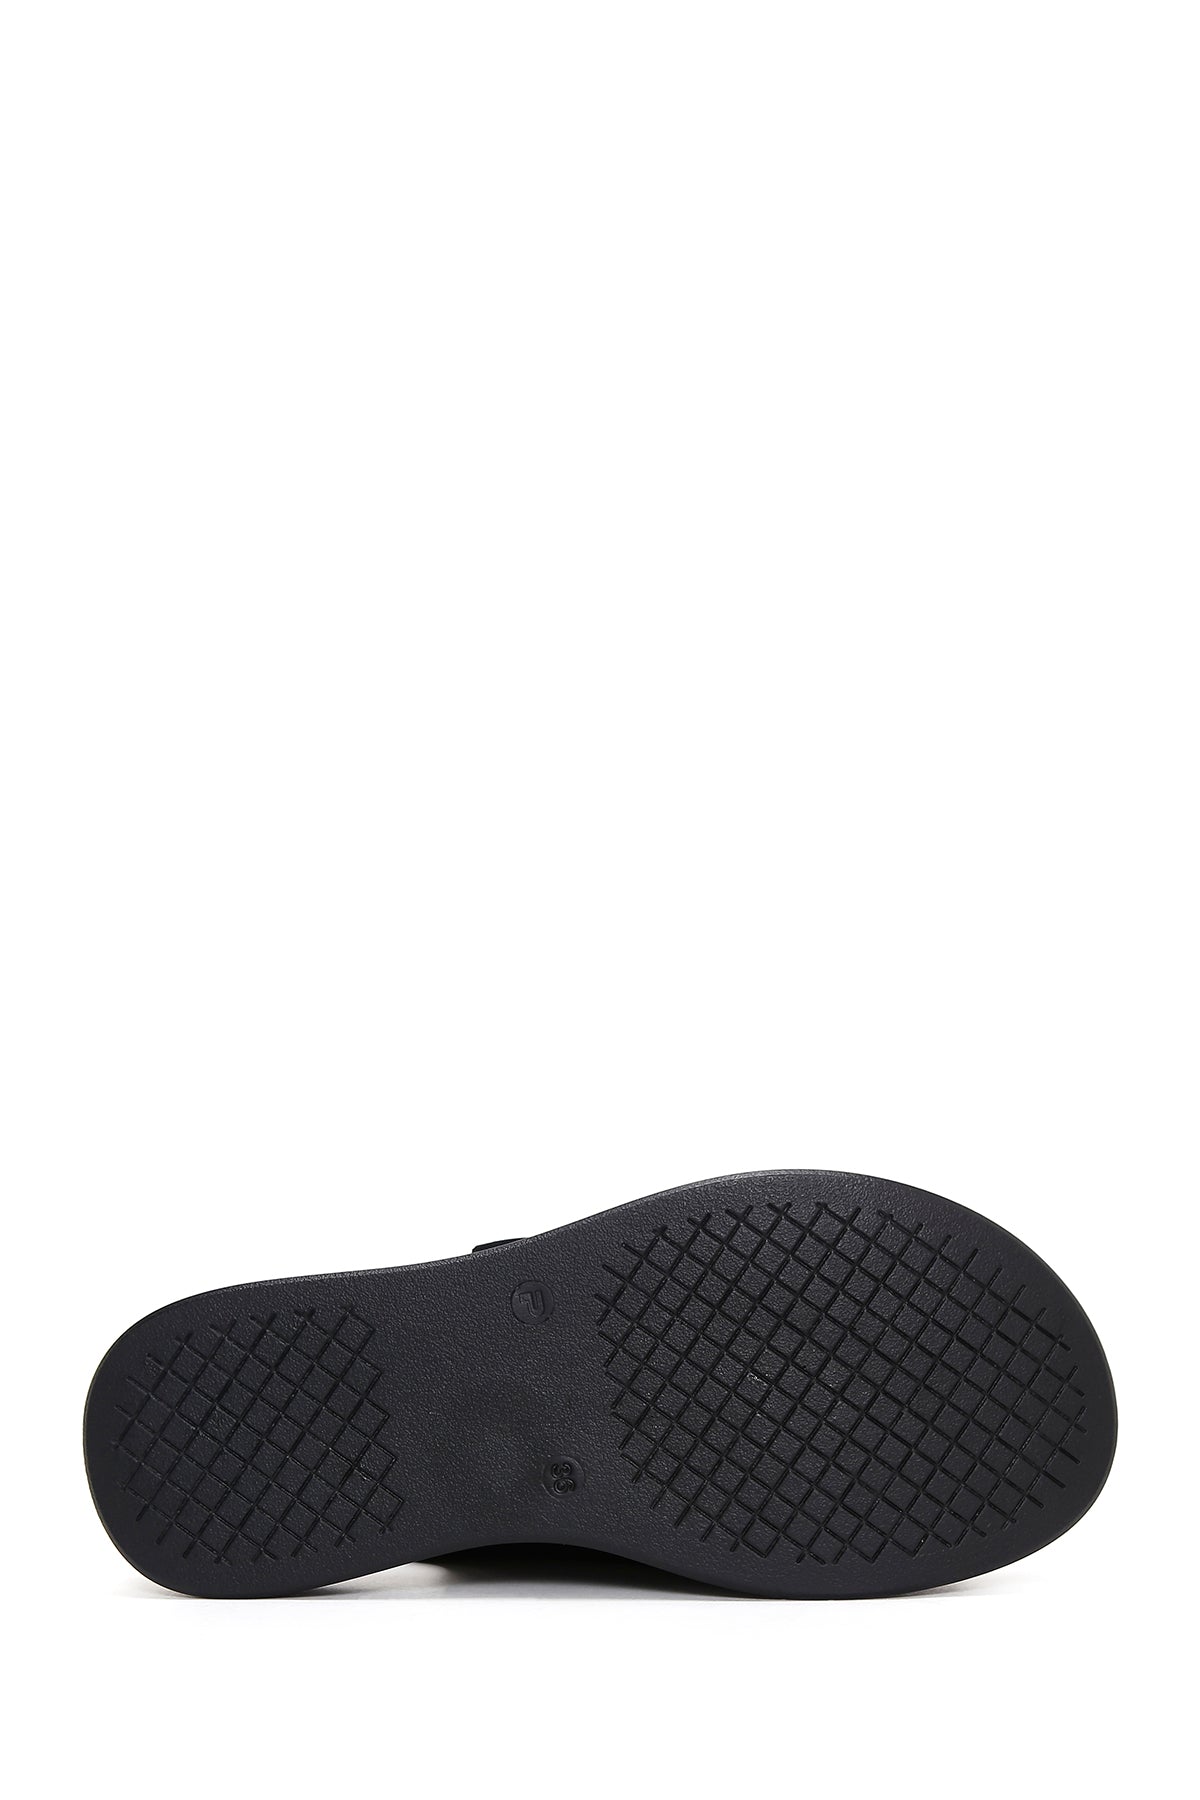 Kadın Siyah Deri Tokalı Comfort Sandalet